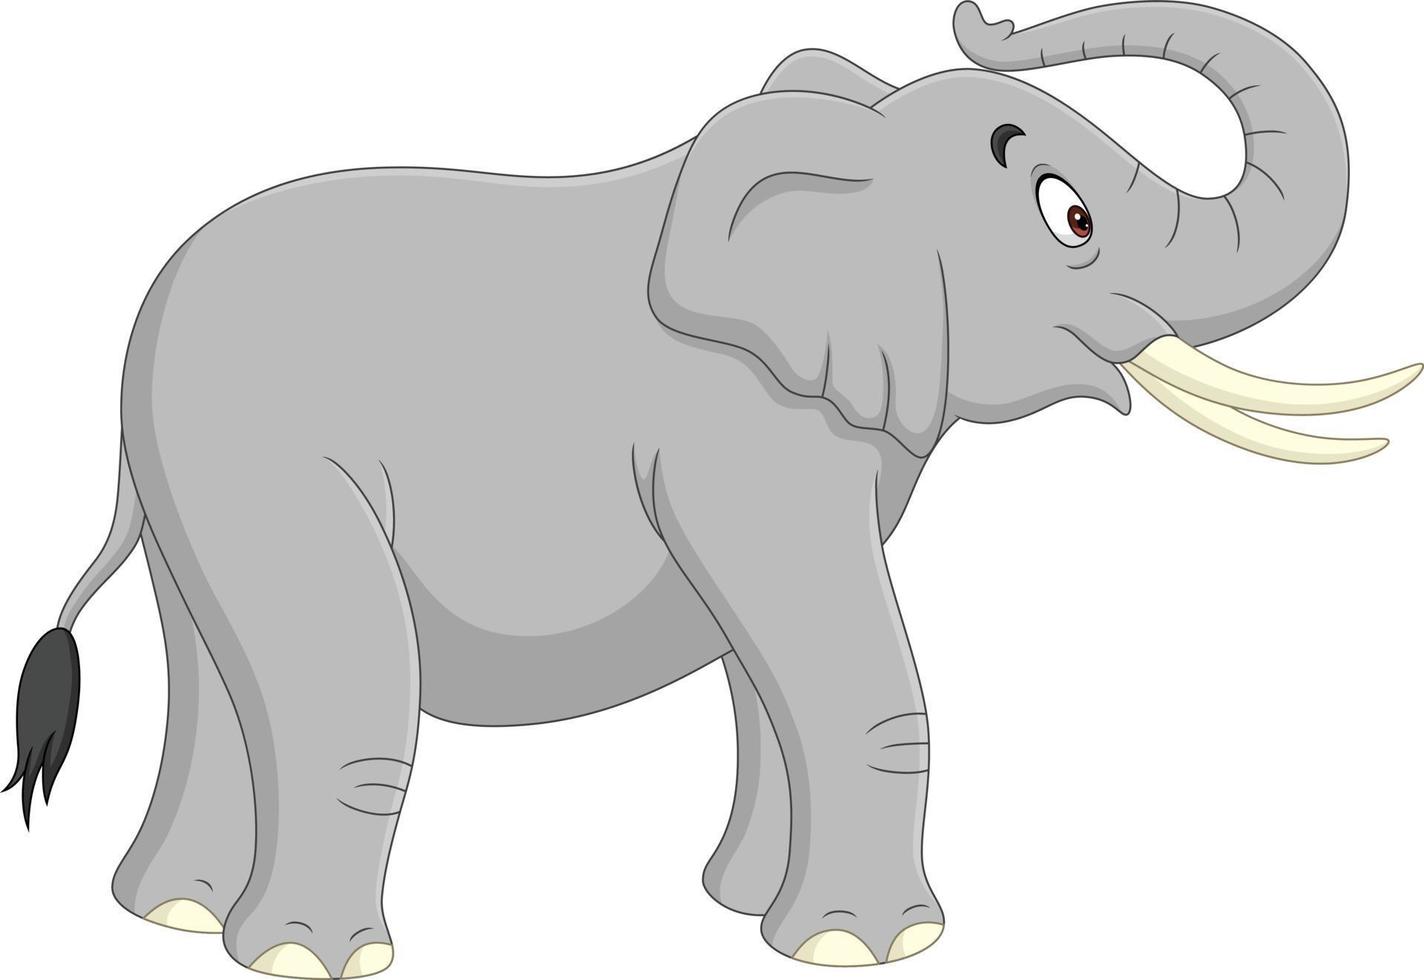 Éléphant de dessin animé isolé sur fond blanc vecteur